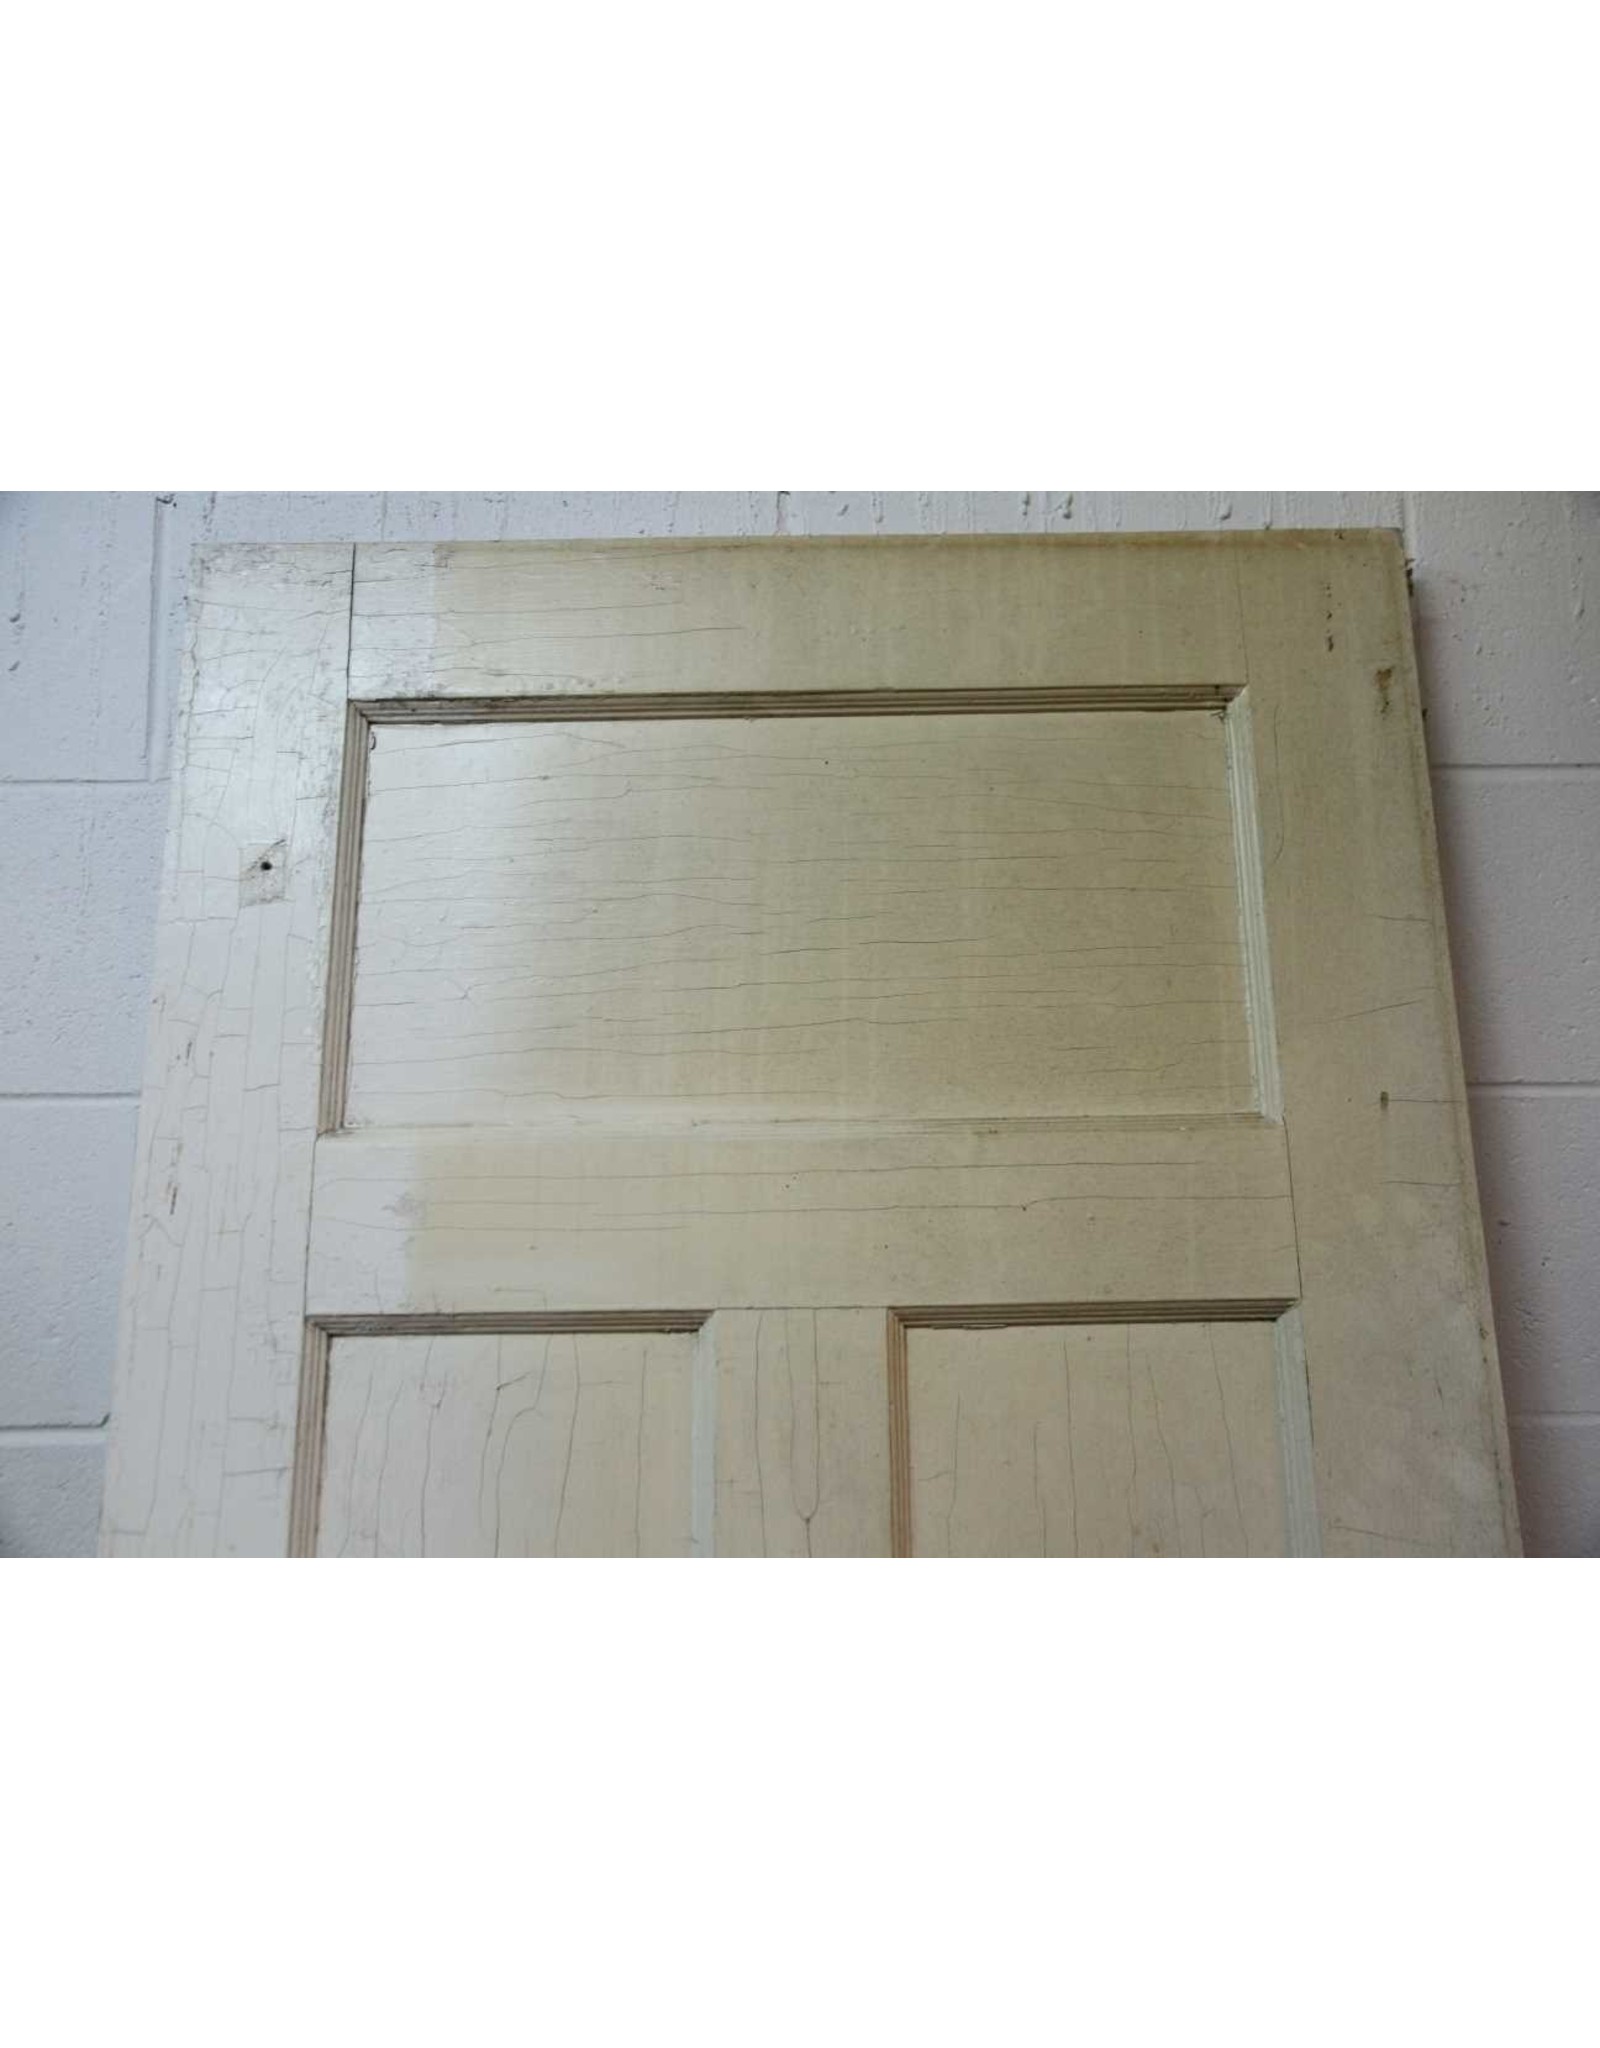 Vintage three panel interior solid wood door with doorknob - The Argosy